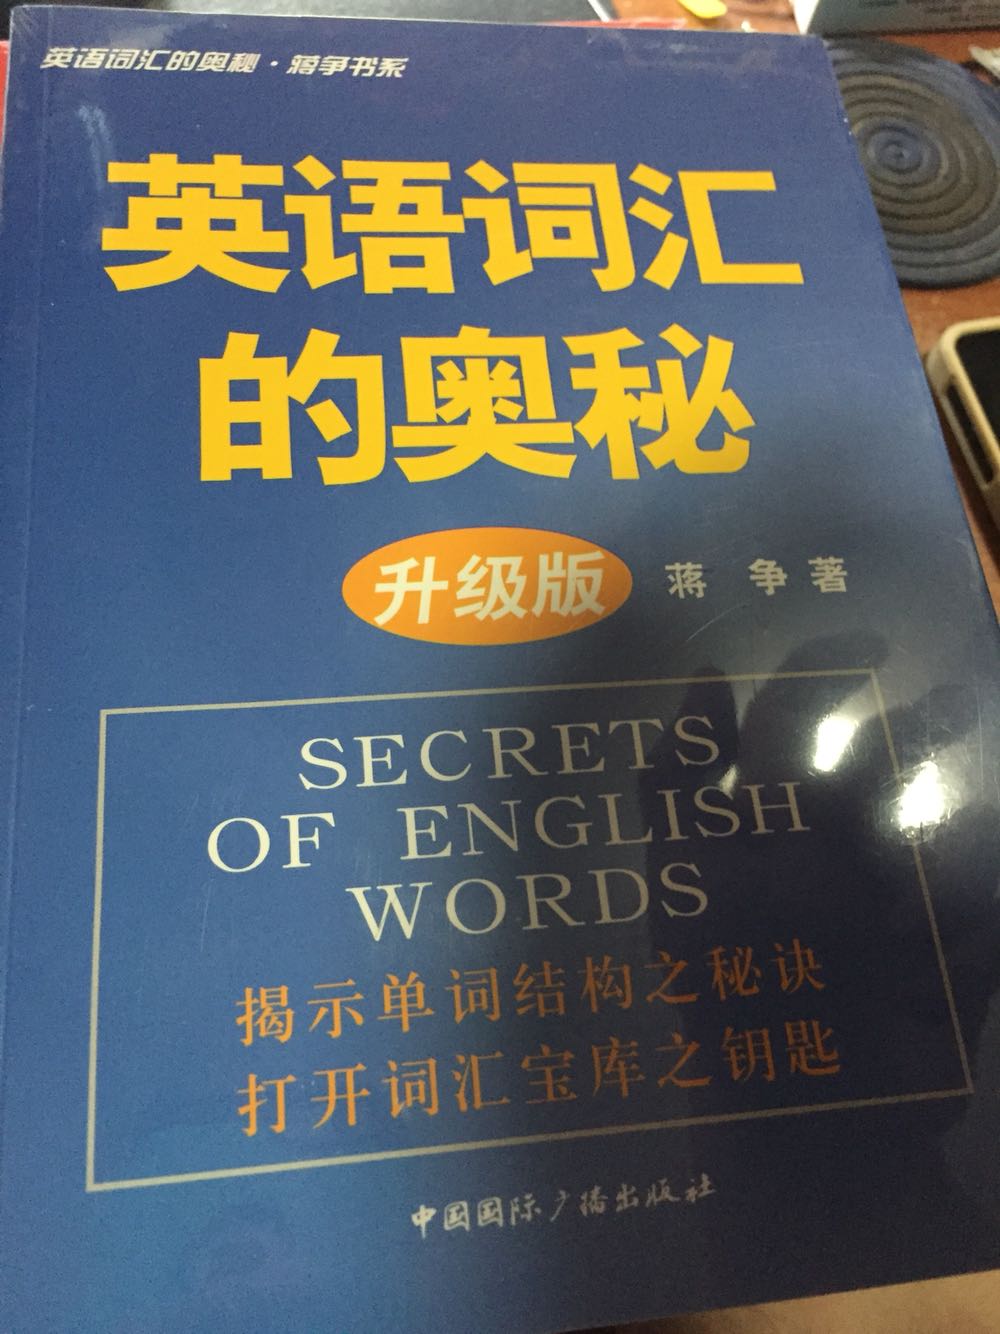 学英语不容易啊。耐心